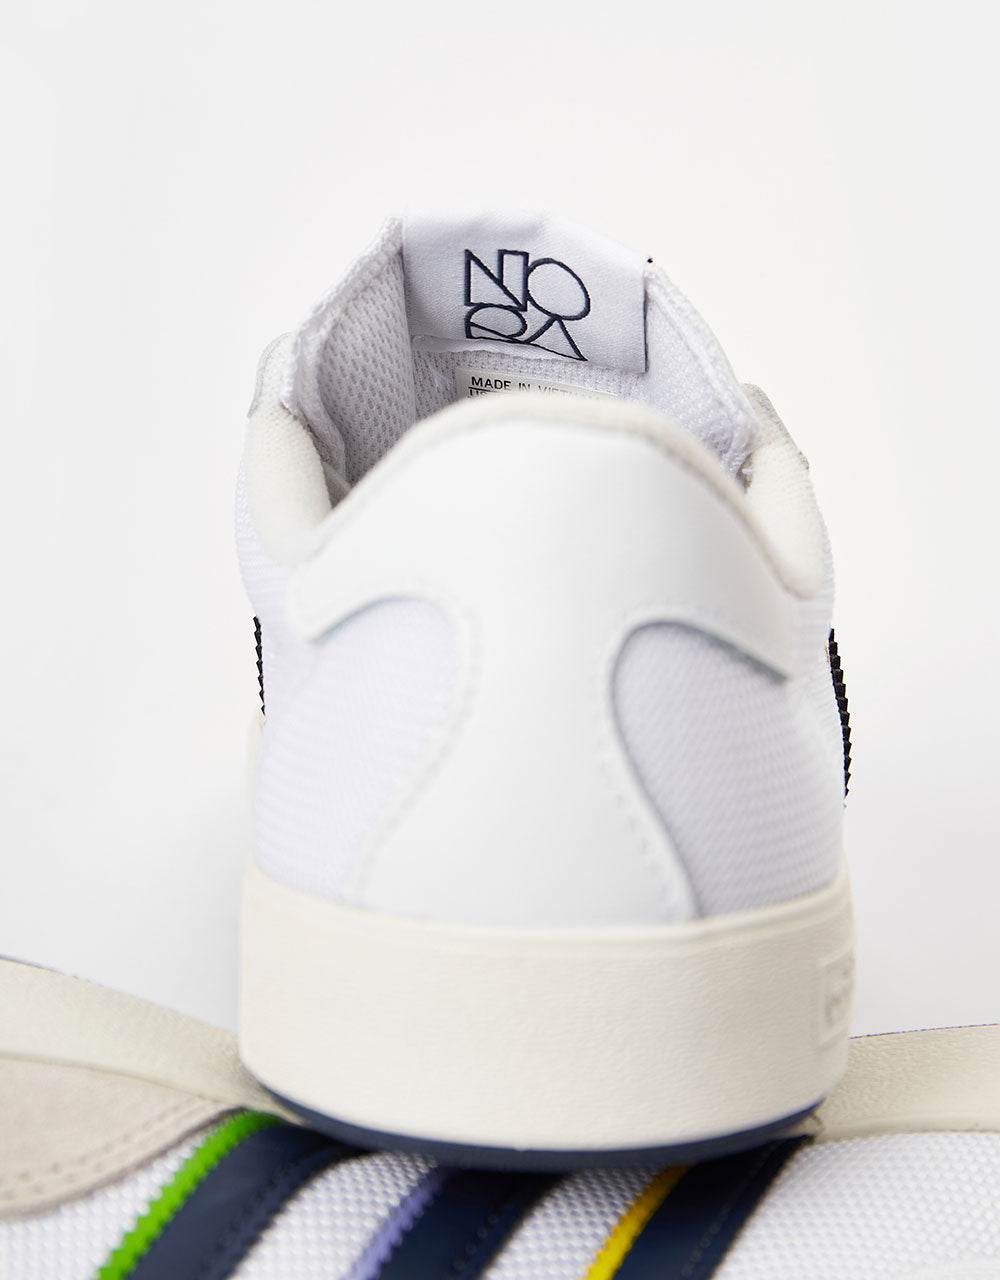 adidas Nora Skate Shoes - White/Shadow Navy/Gold Metallic